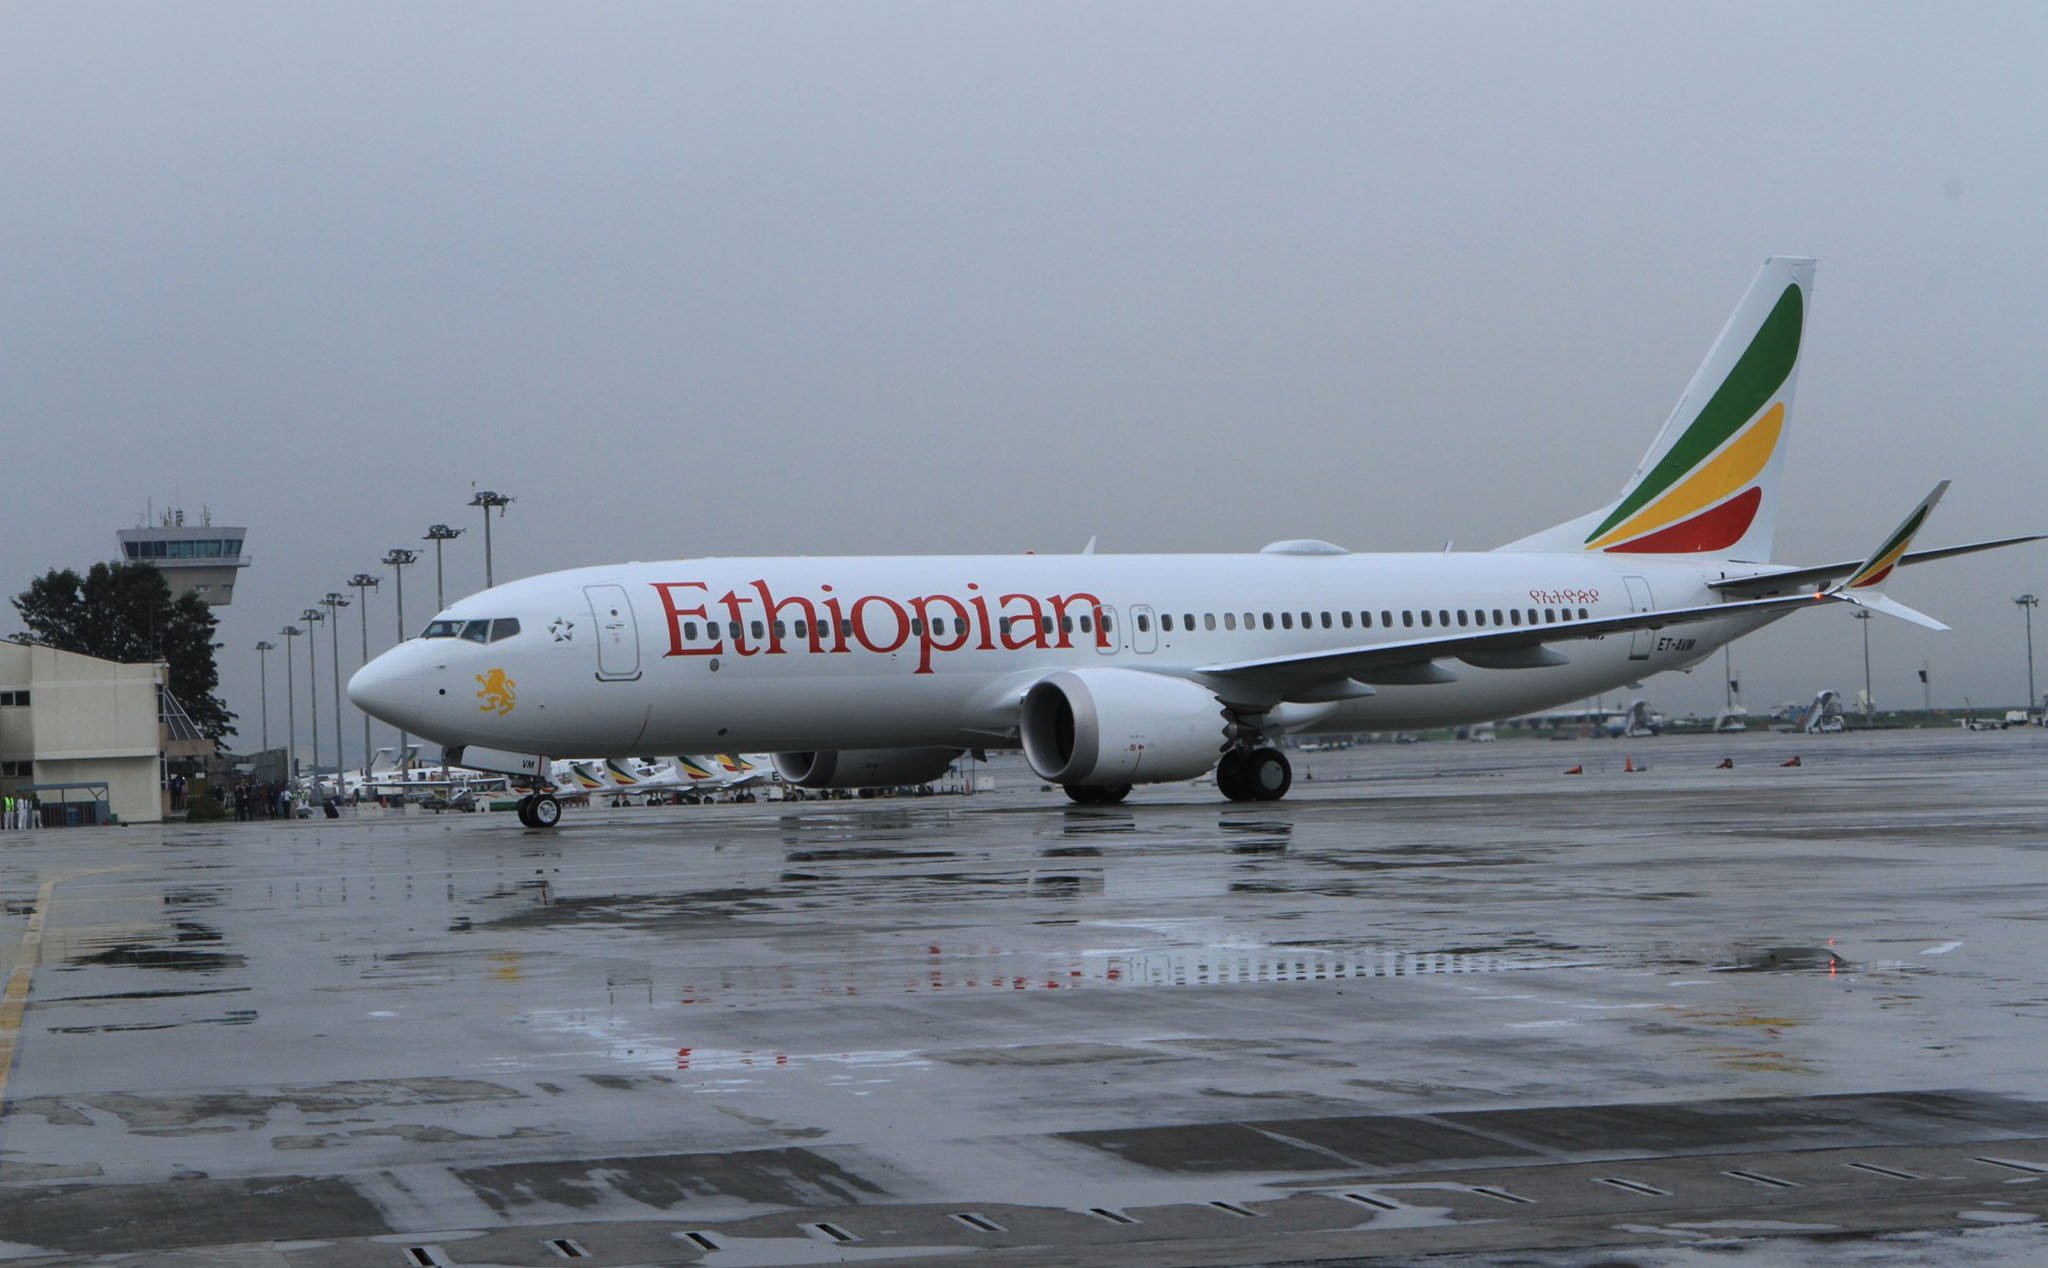 Thêm một chiếc Boeing 737 MAX 8 chở hơn 150 người vừa rơi ở Ethiopia. Cập nhật: Hiện trường